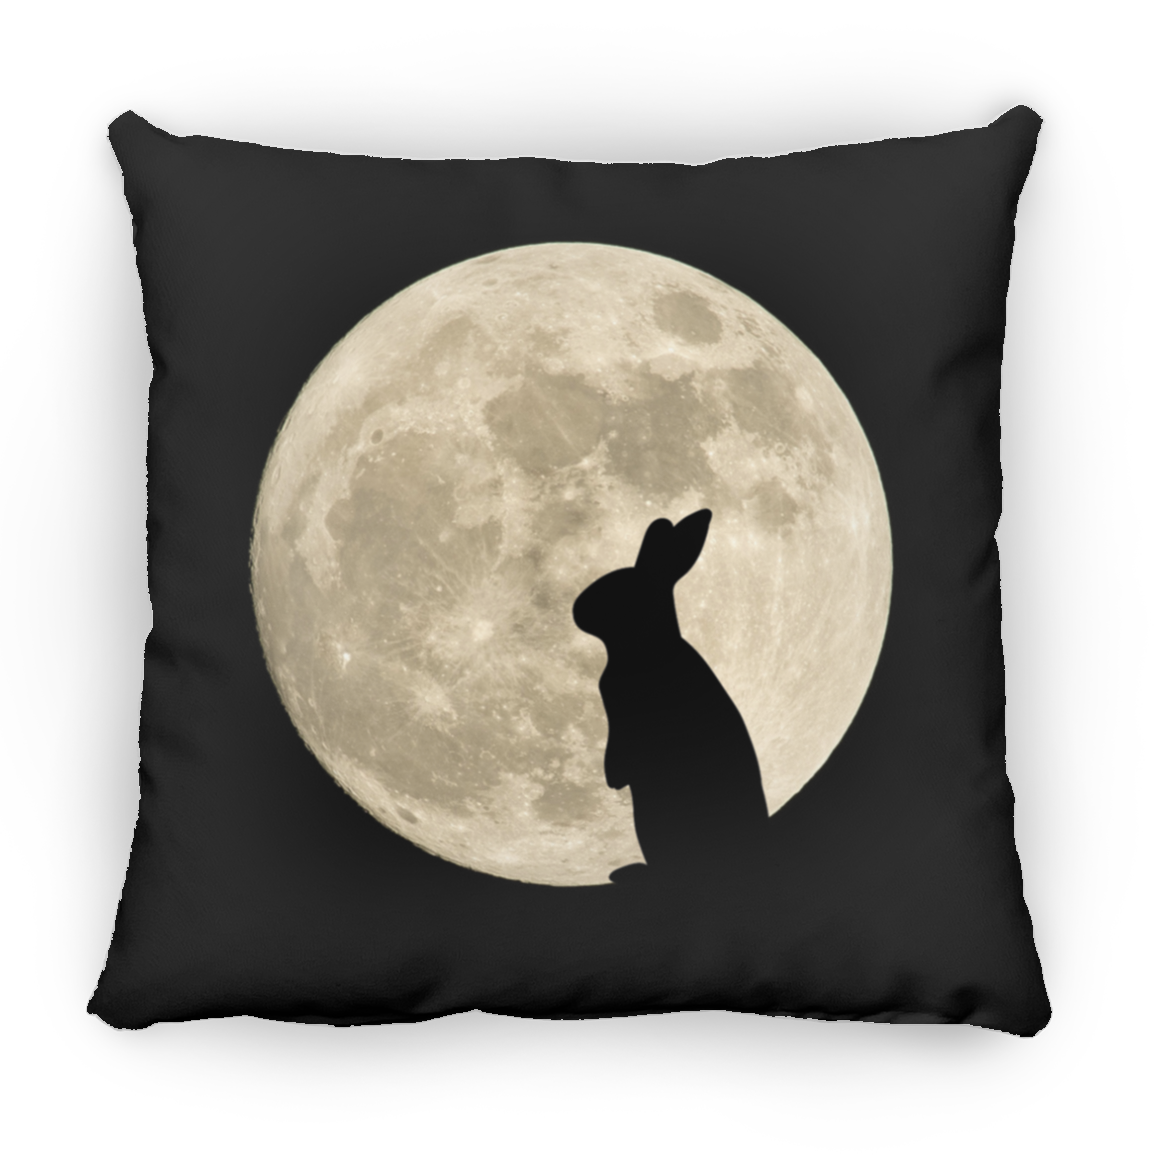 Bunny Moon 2 - Pillows